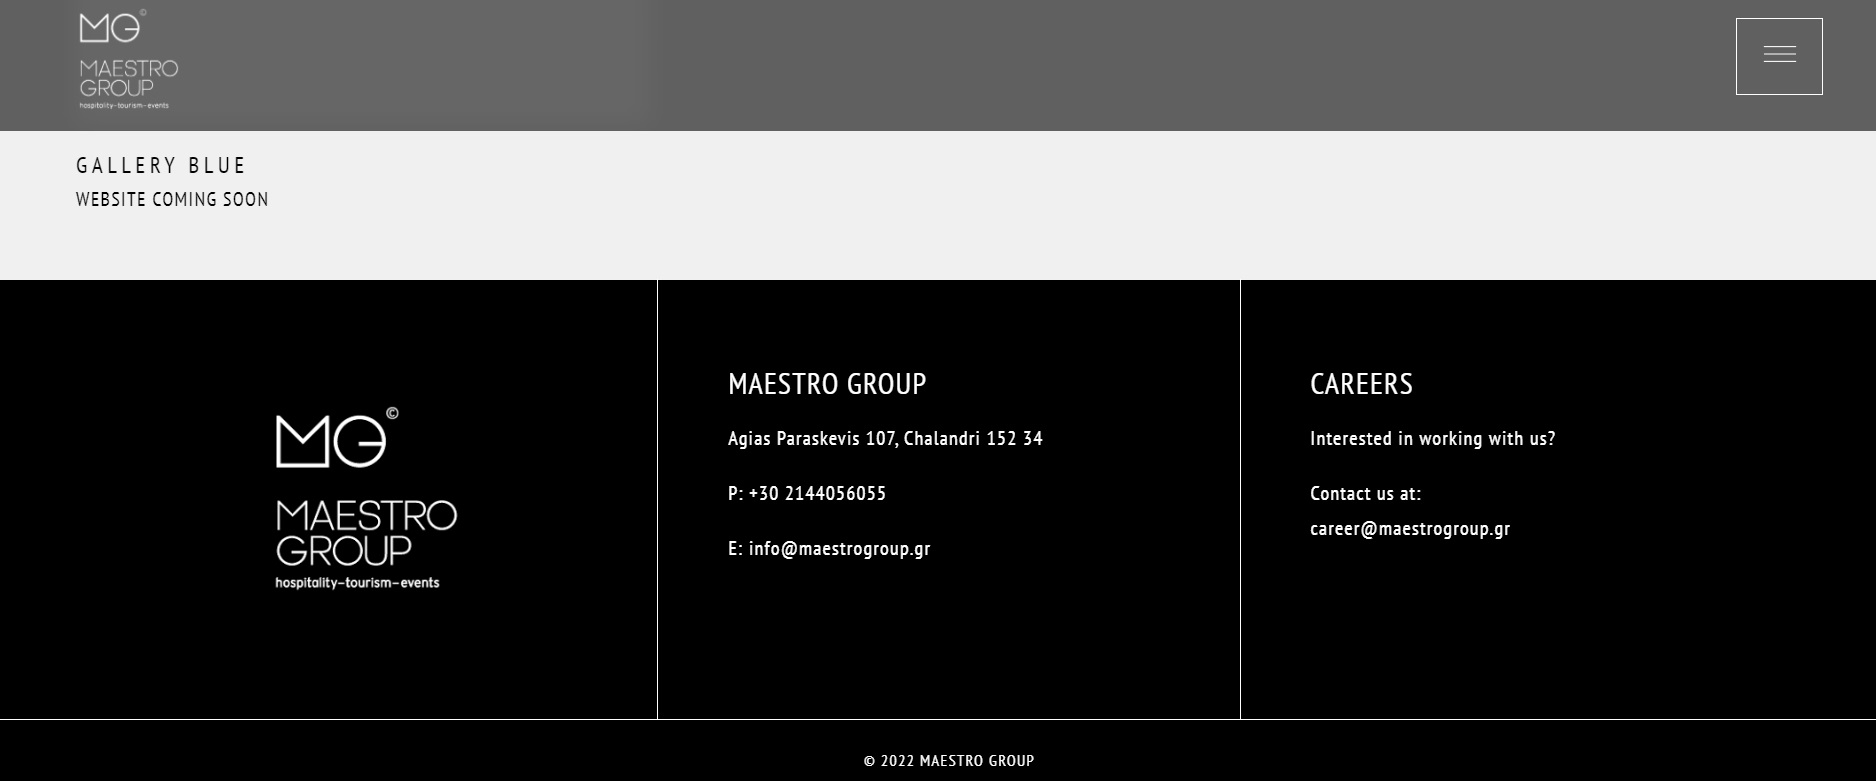 Η εταιρεία GR8 και η Maestro Group έχουν την ίδια διεύθυνση στο Χαλάνδρι